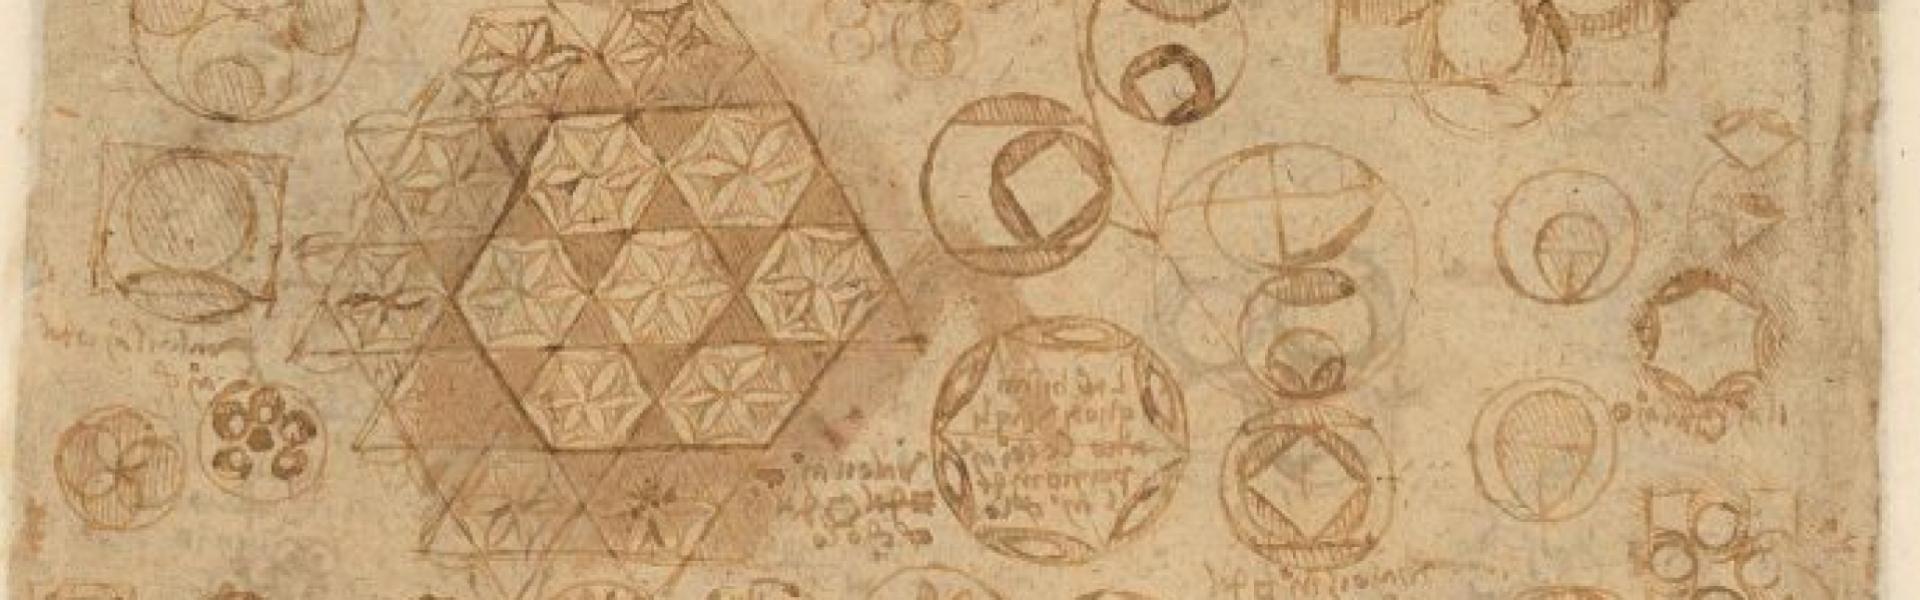 Codice Atlantico di Leonardo